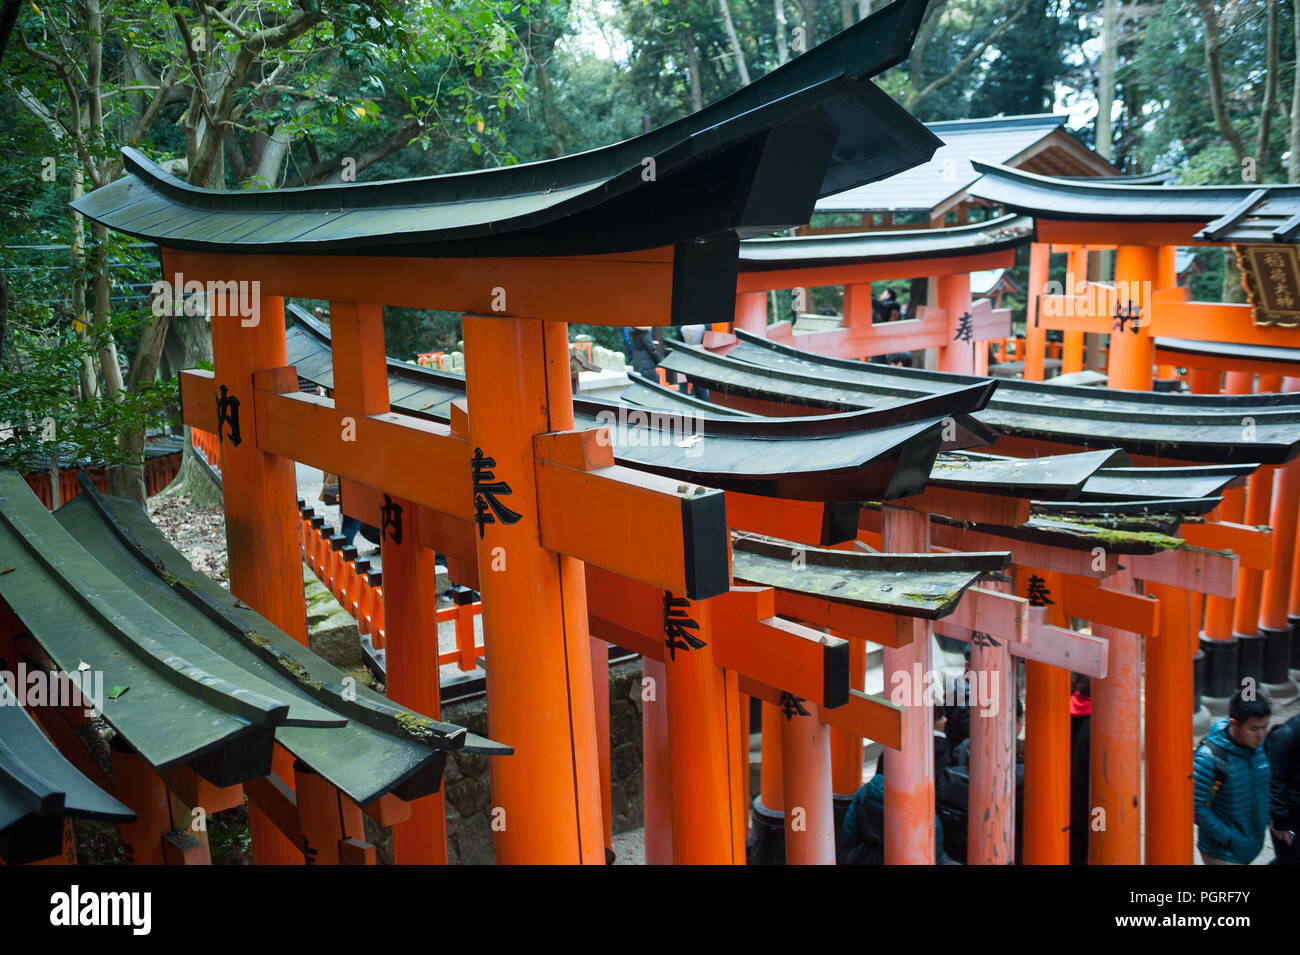 24.12.2017, Kyoto, Giappone, Asia - Vermiglio cancelli in legno linea uno del Torii sentieri che conducono a Fushimi Inari Taisha, un santuario scintoista di Kyoto. Foto Stock